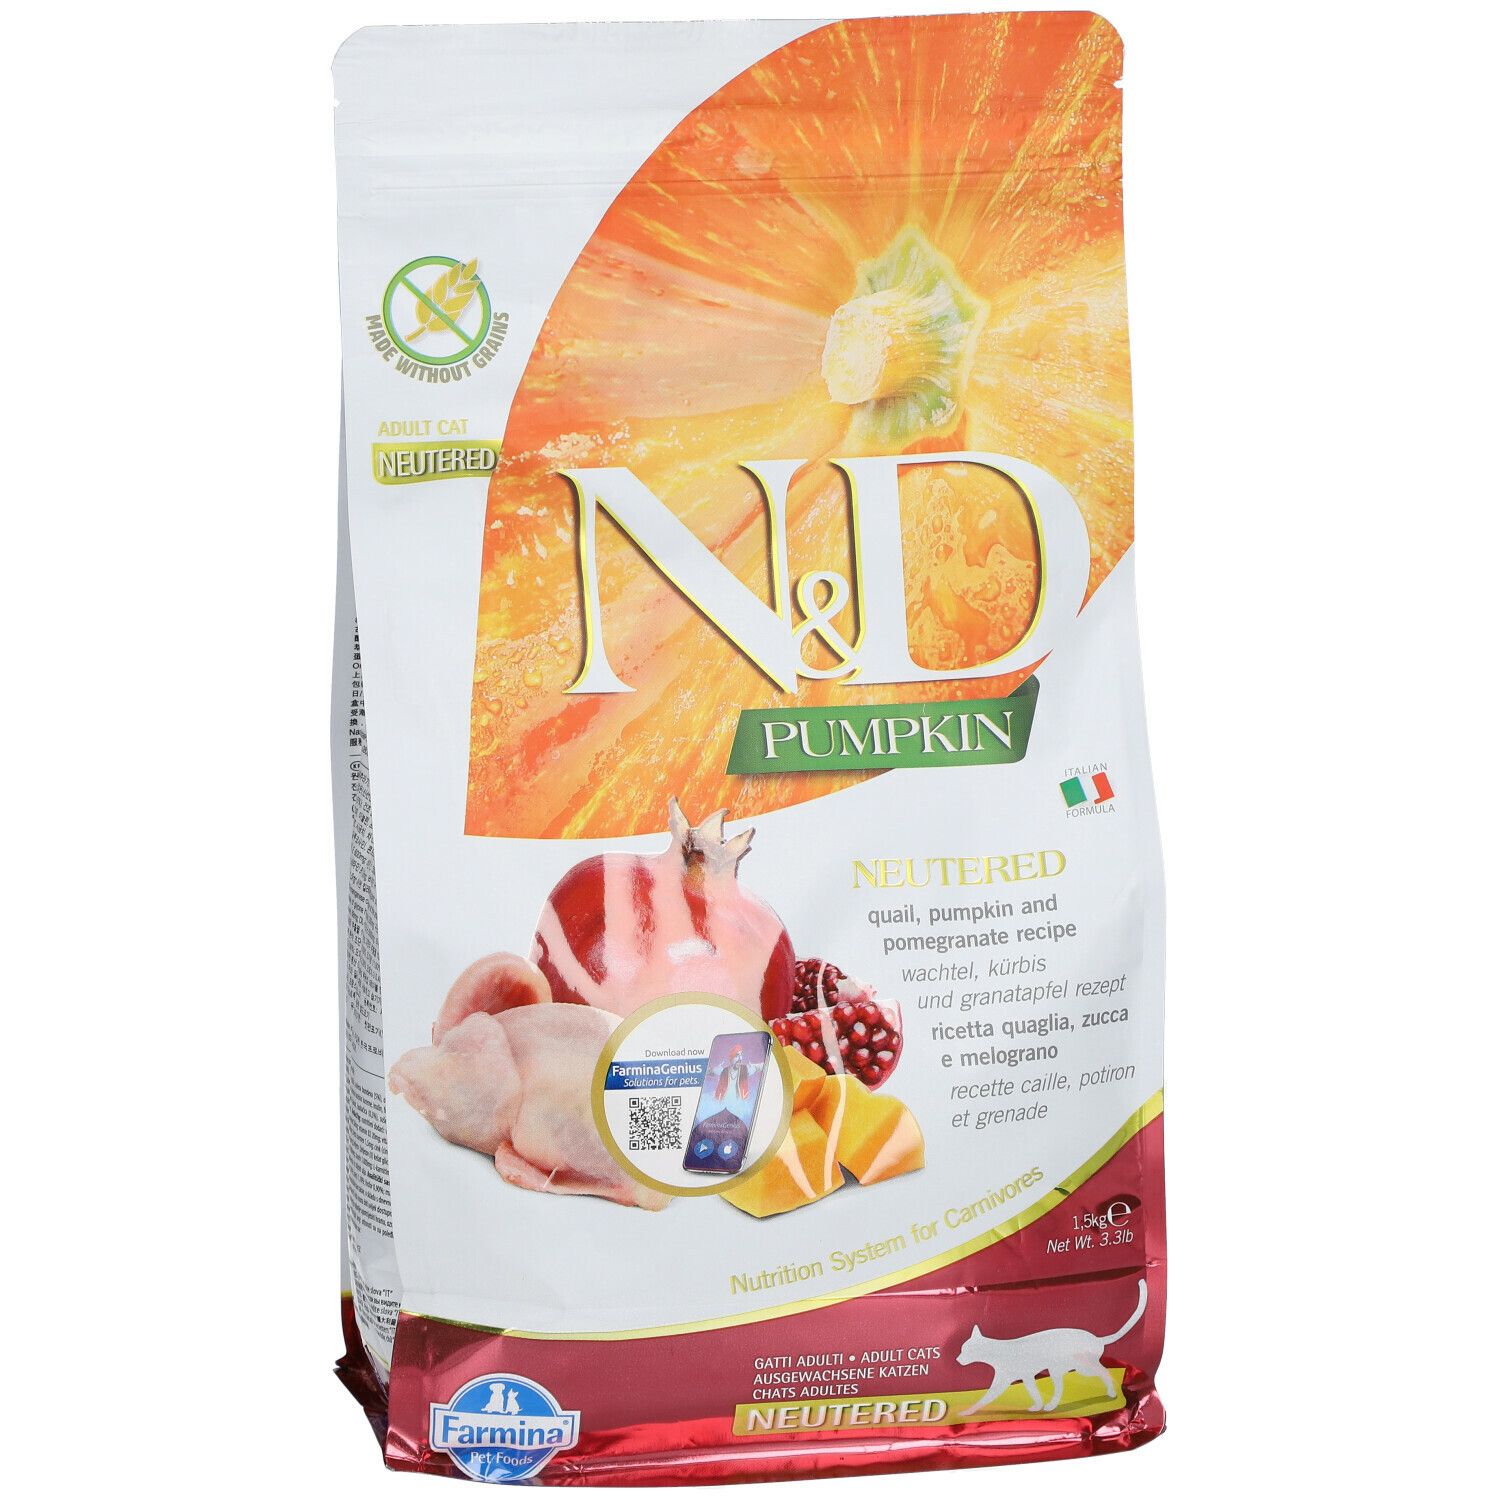 Farmina® N&D Pumpkin Quail and Pomegranate Neutered